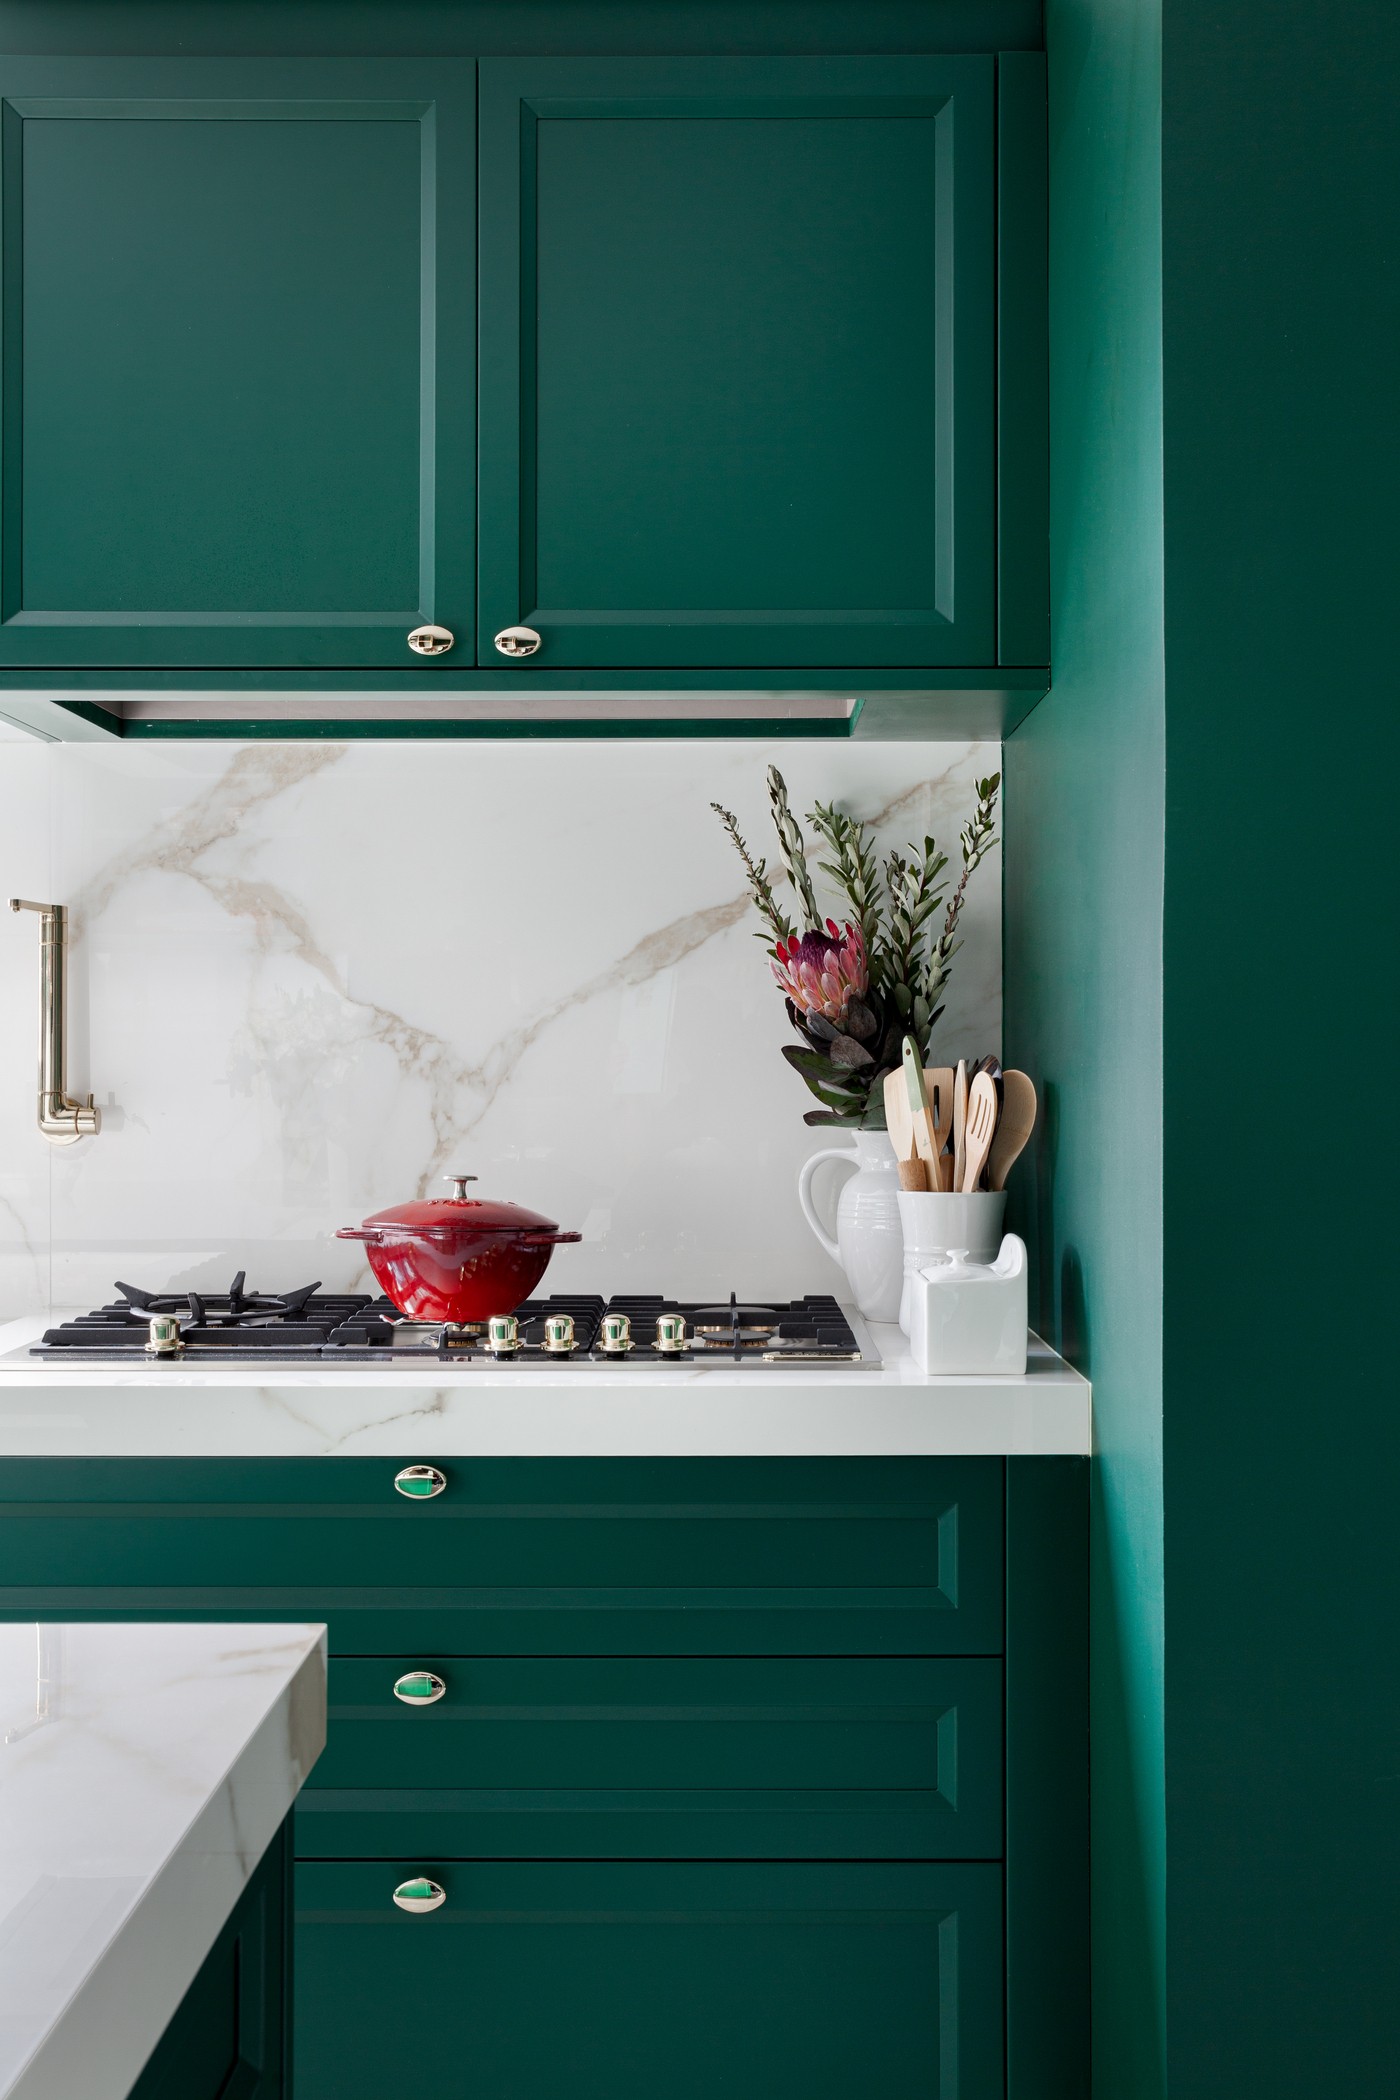 Décor do dia: cozinha integrada à lavanderia tem marcenaria verde como protagonista (Foto: Fellipe Lima)